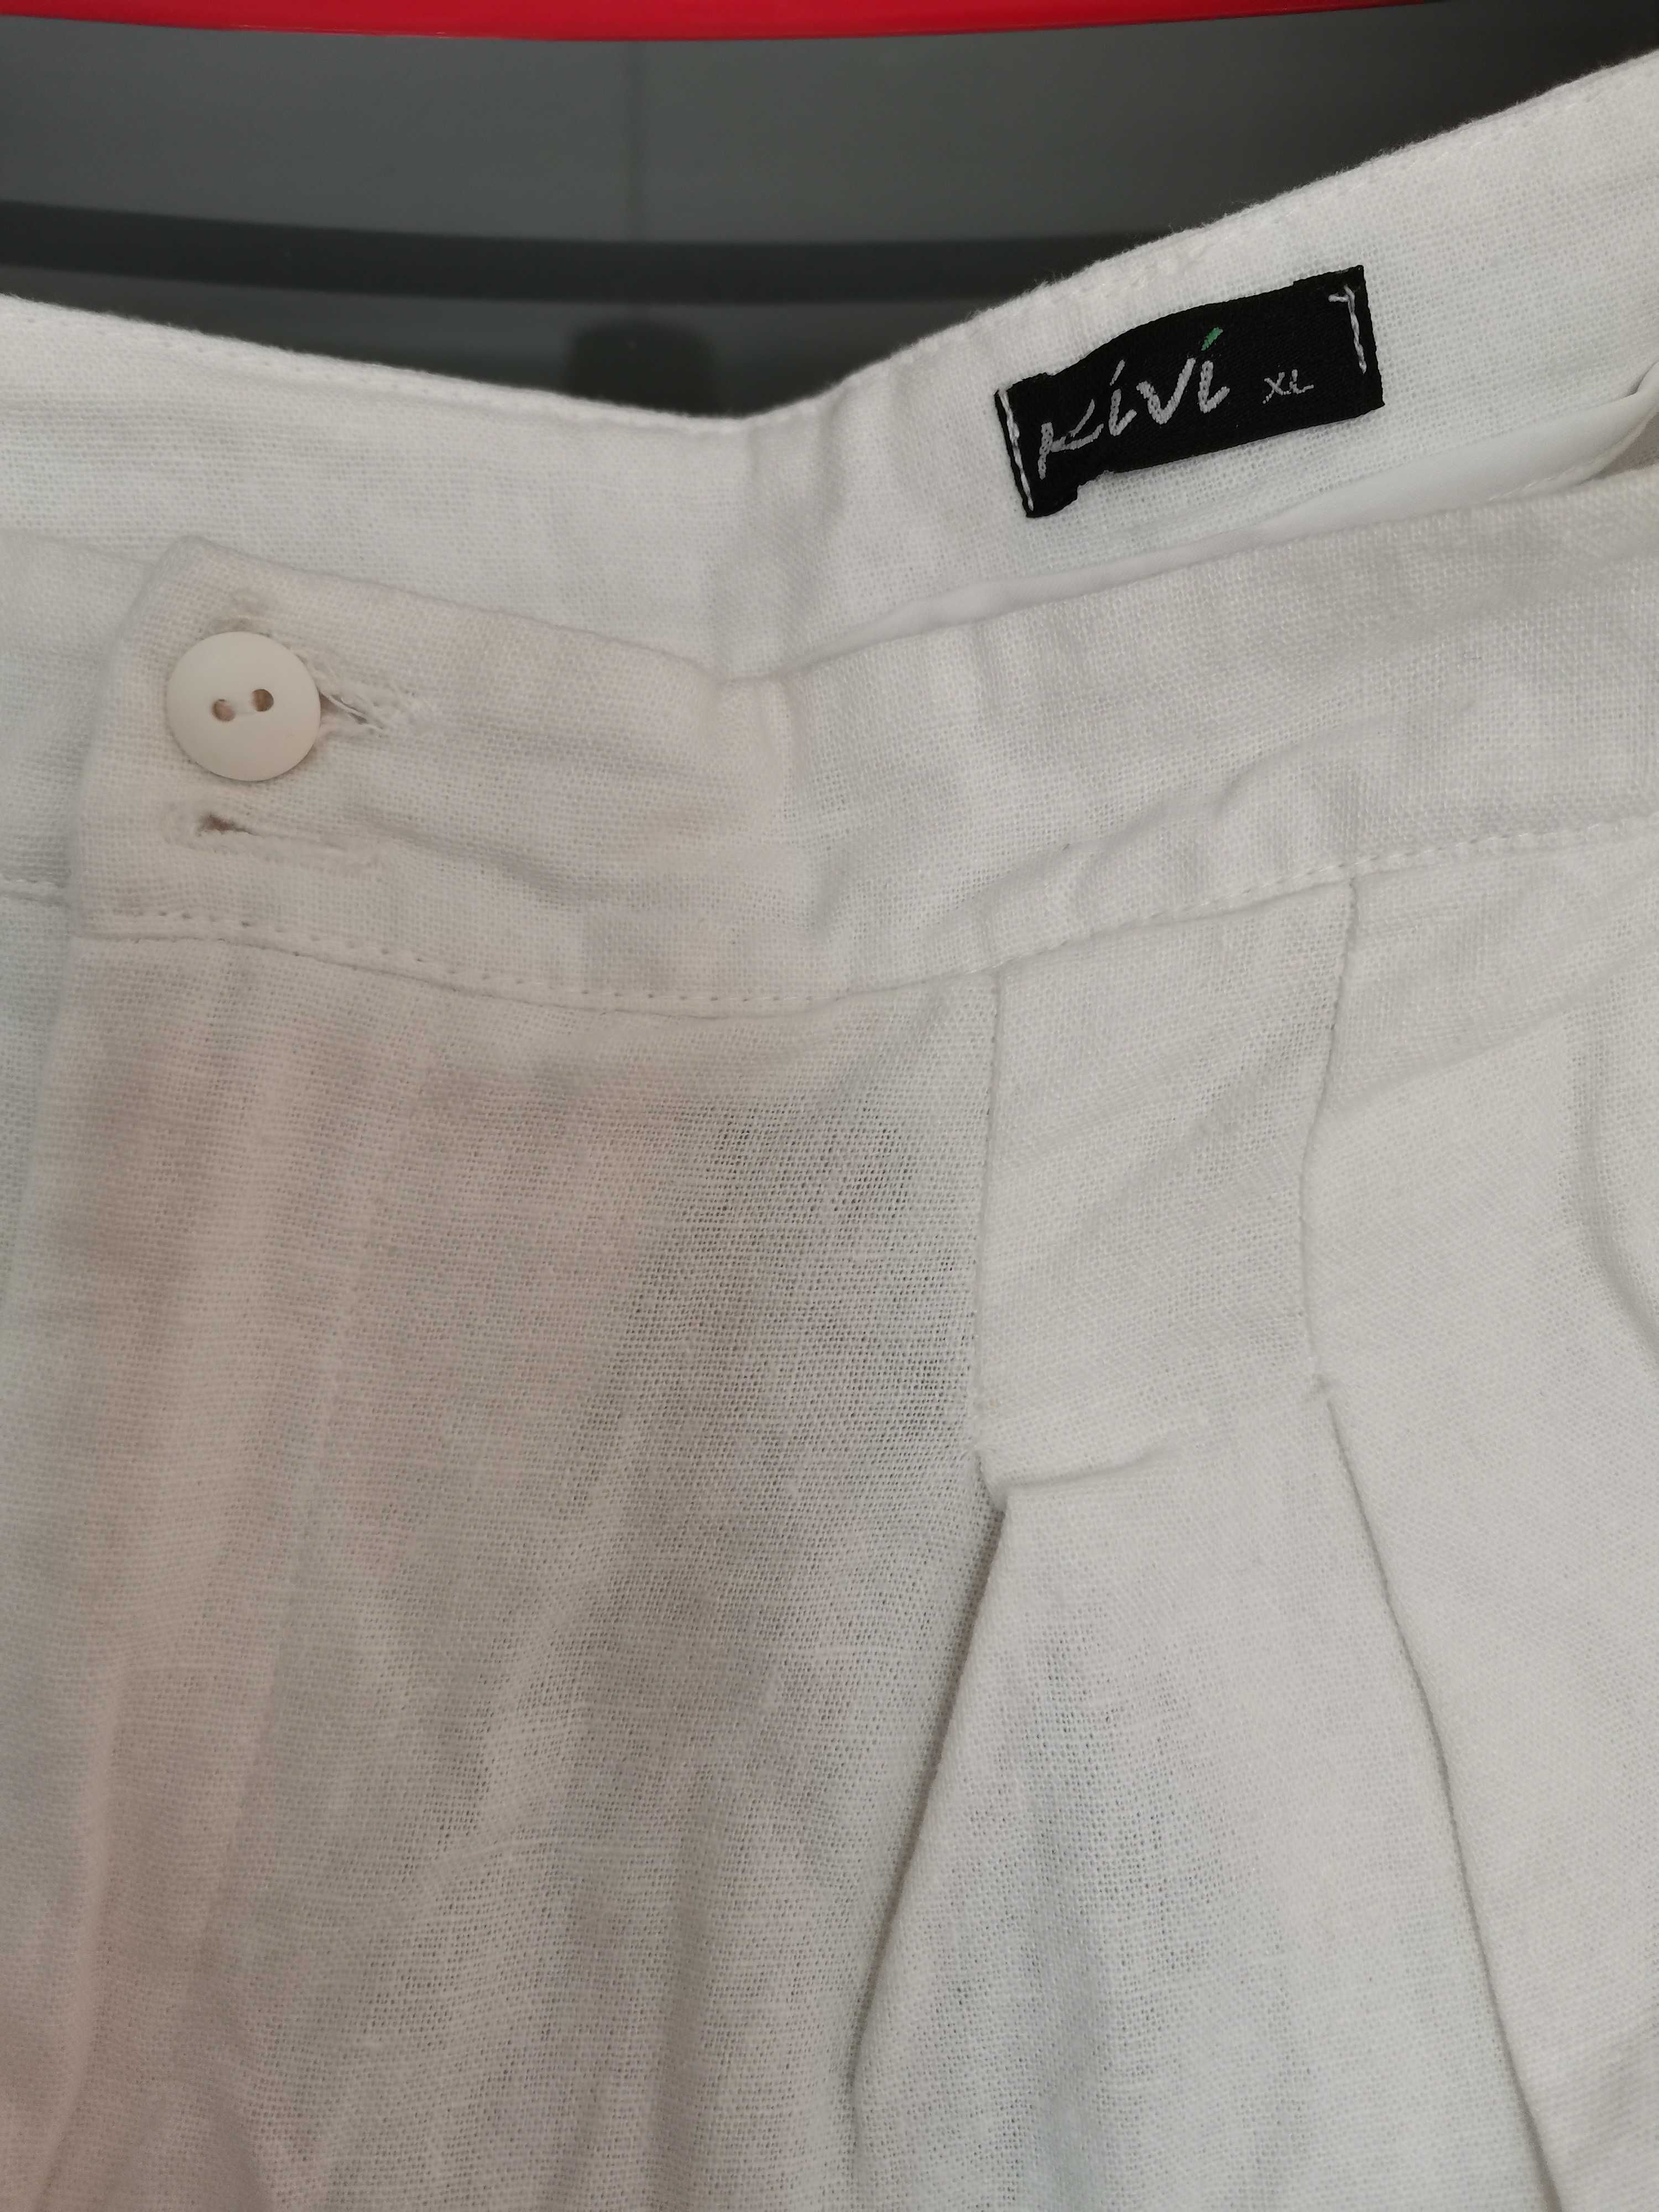 Spodnie białe len/wiskoza XL